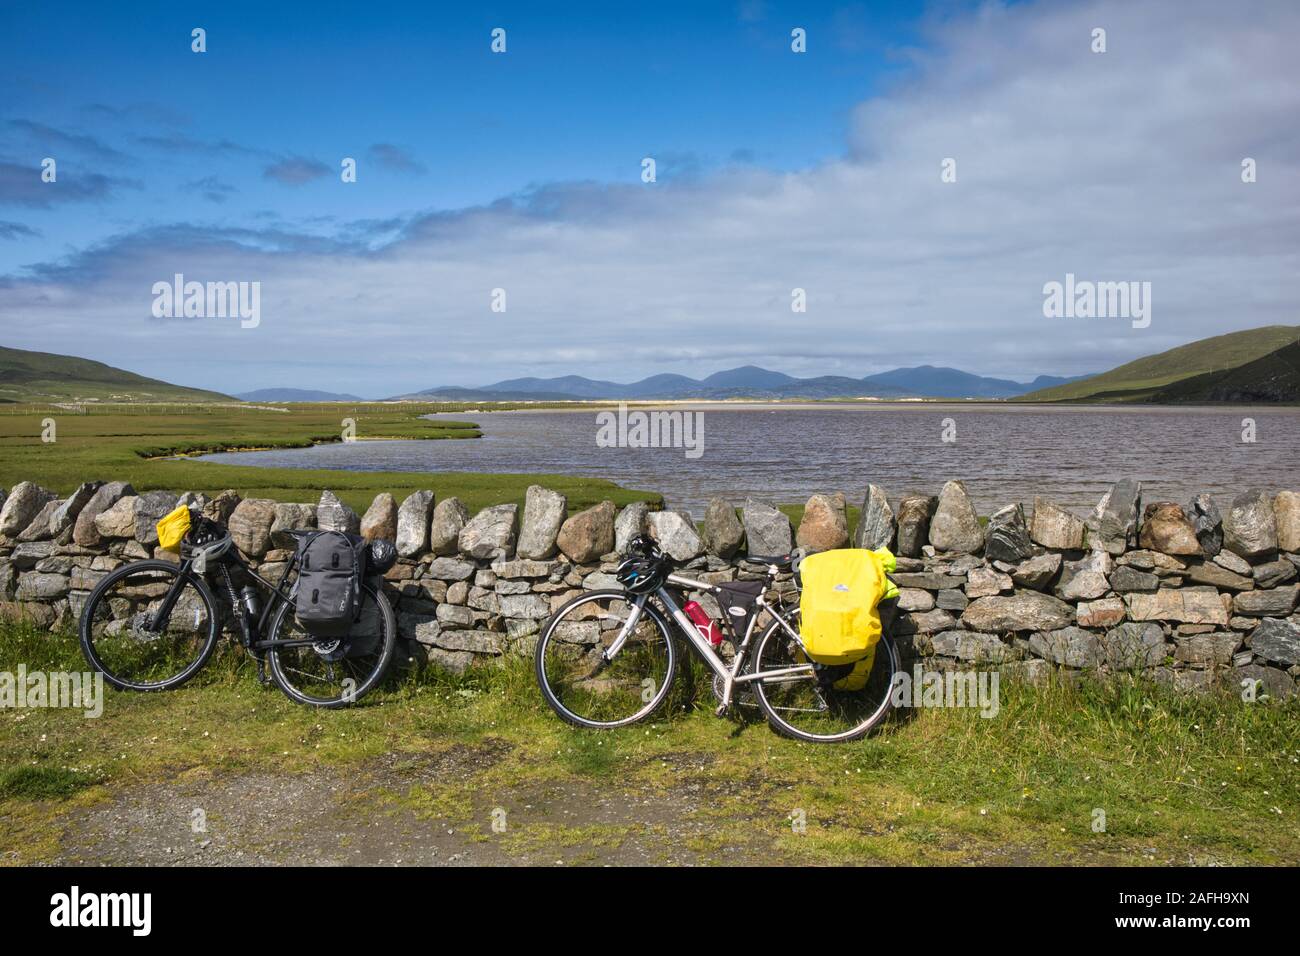 Des vélos de tourisme avec des ranniers se penchant contre un mur de pierre sec près de l'océan Atlantique, Northton, Isle of Harris, Outer Hebrides, Écosse Banque D'Images